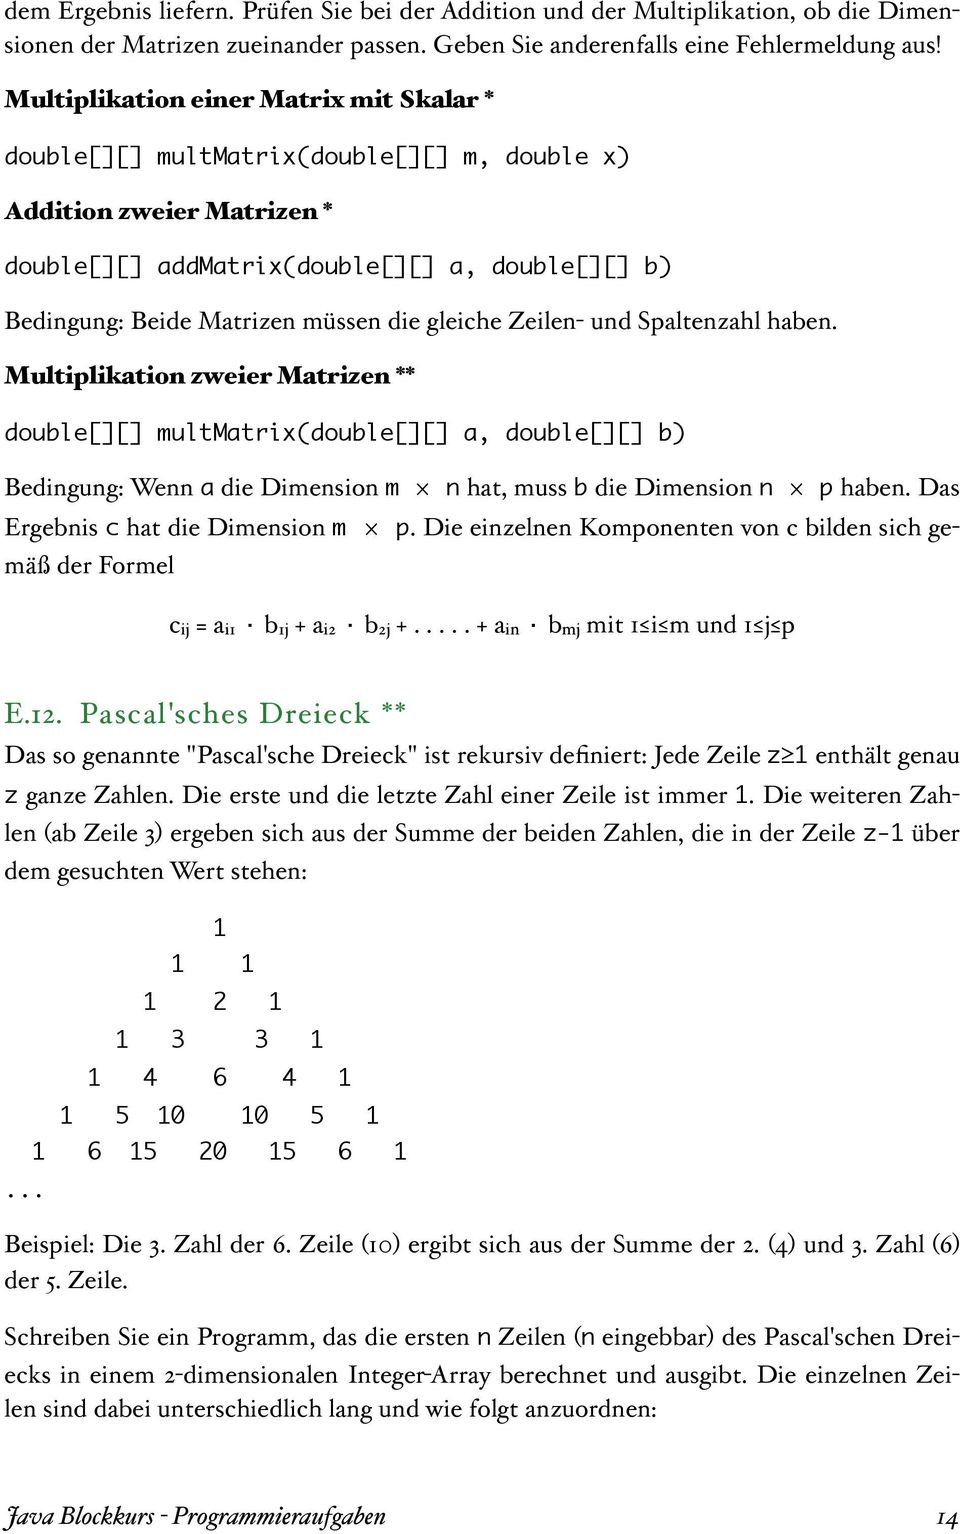 gleiche Zeilen- und Spaltenzahl haben. Multiplikation zweier Matrizen ** double[][] multmatrix(double[][] a, double[][] b) Bedingung: Wenn a die Dimension m n hat, muss b die Dimension n p haben.